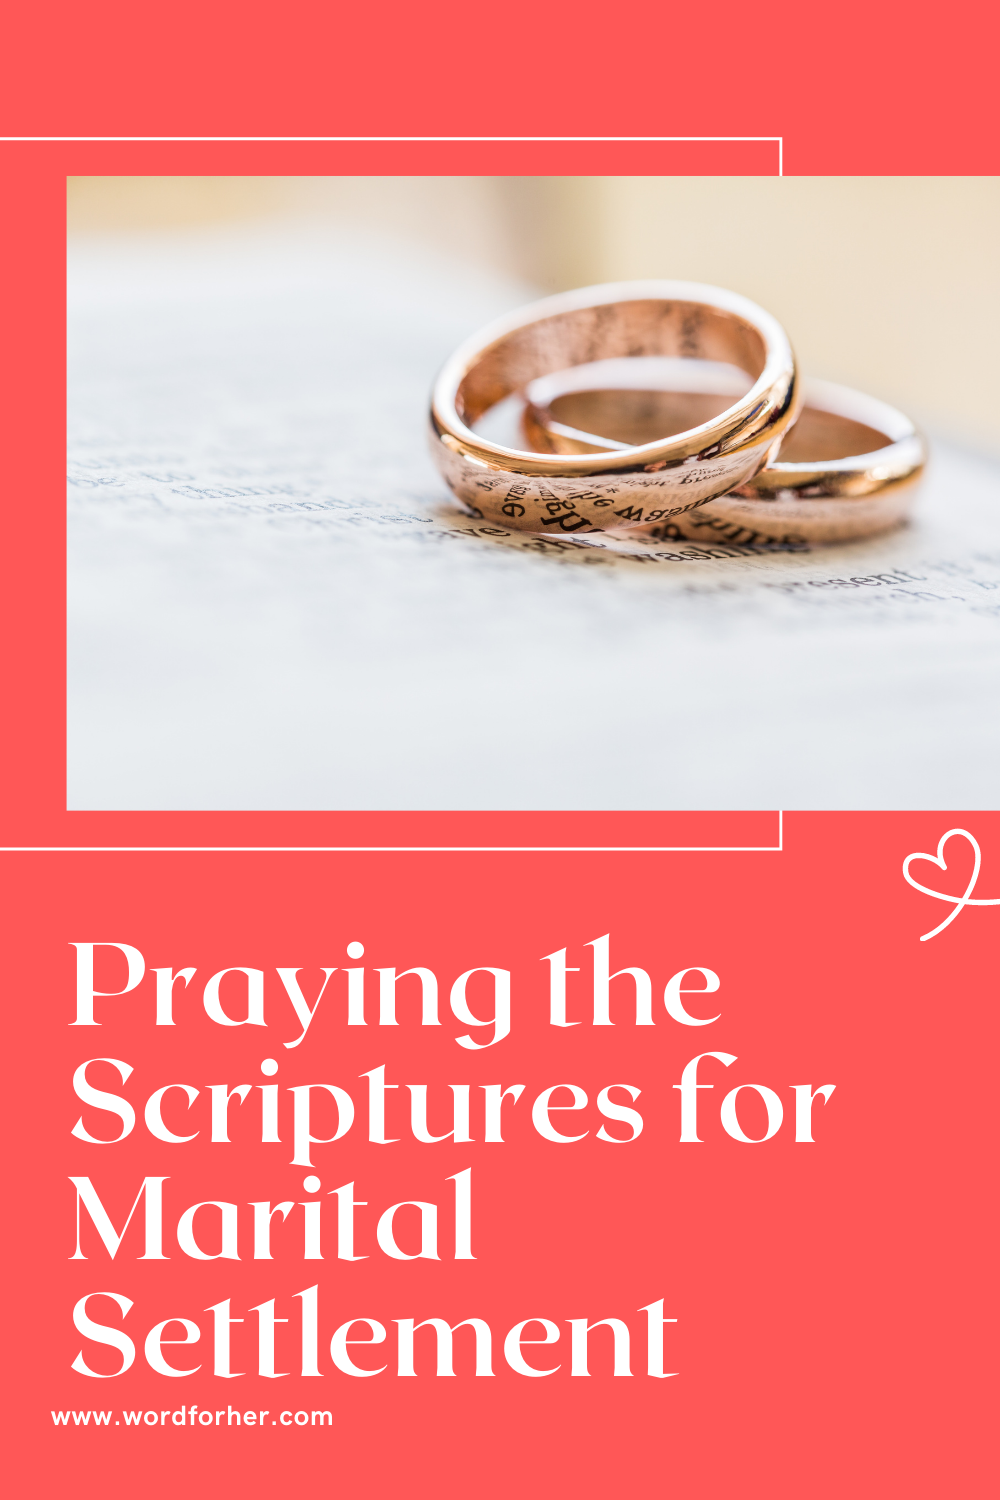 Prayers for marital settlement